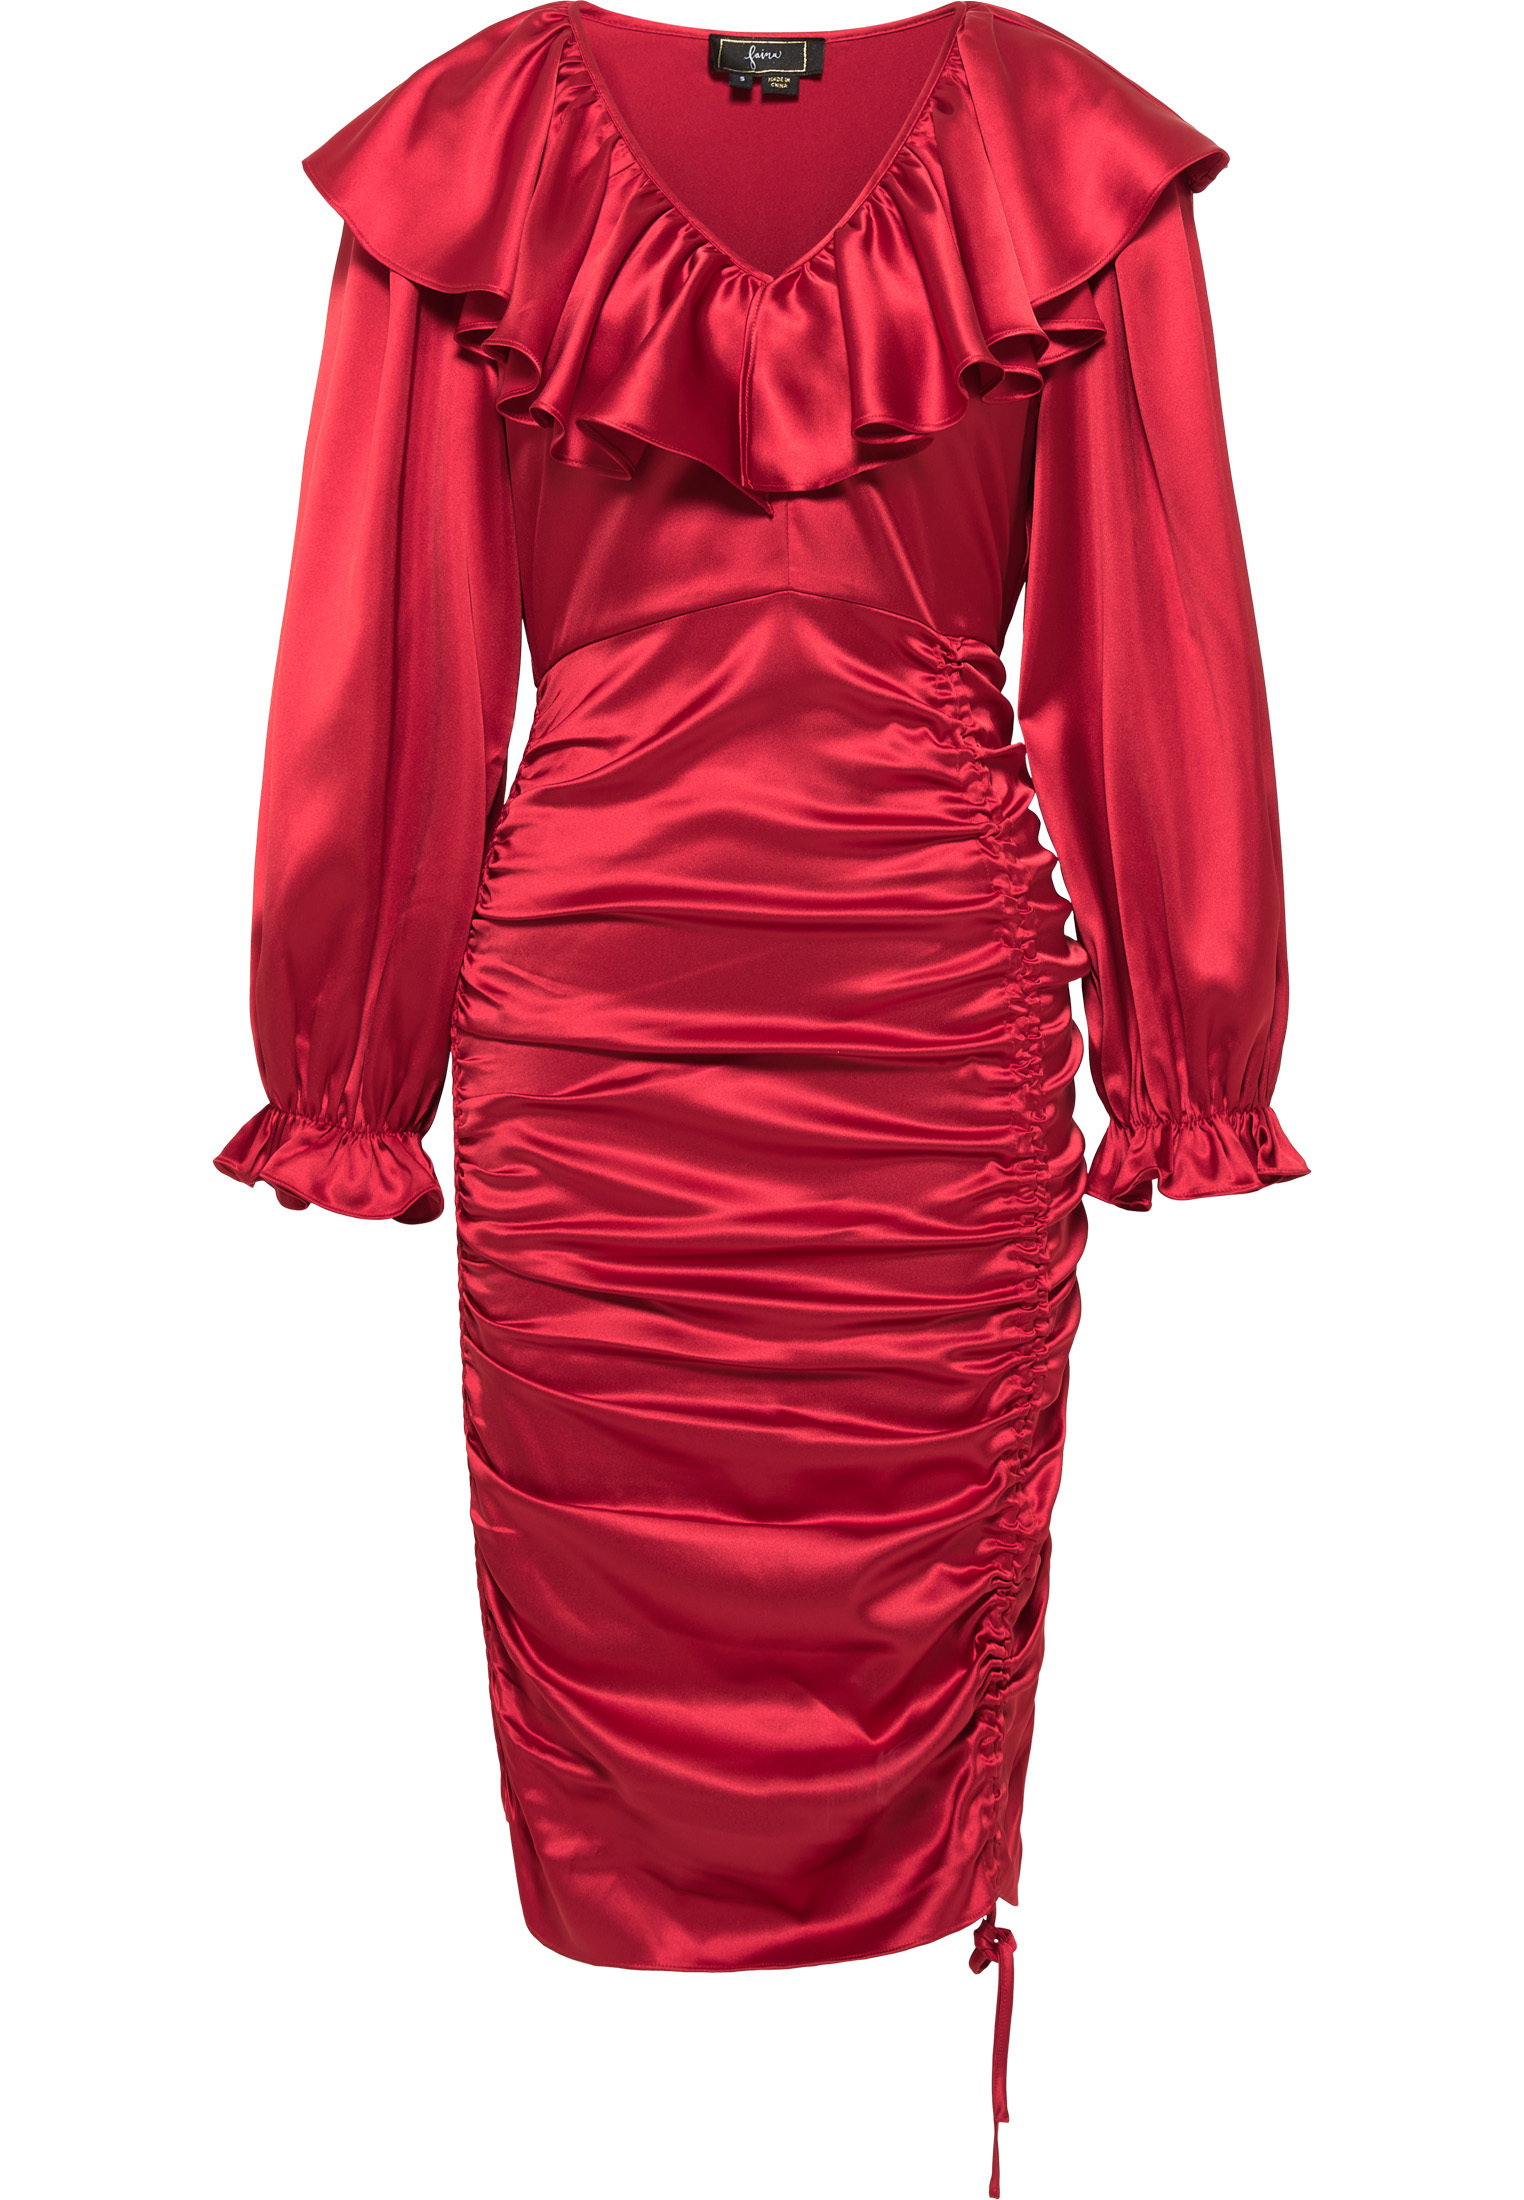 Odzież Kobiety faina Sukienka koktajlowa w kolorze Czerwonym 